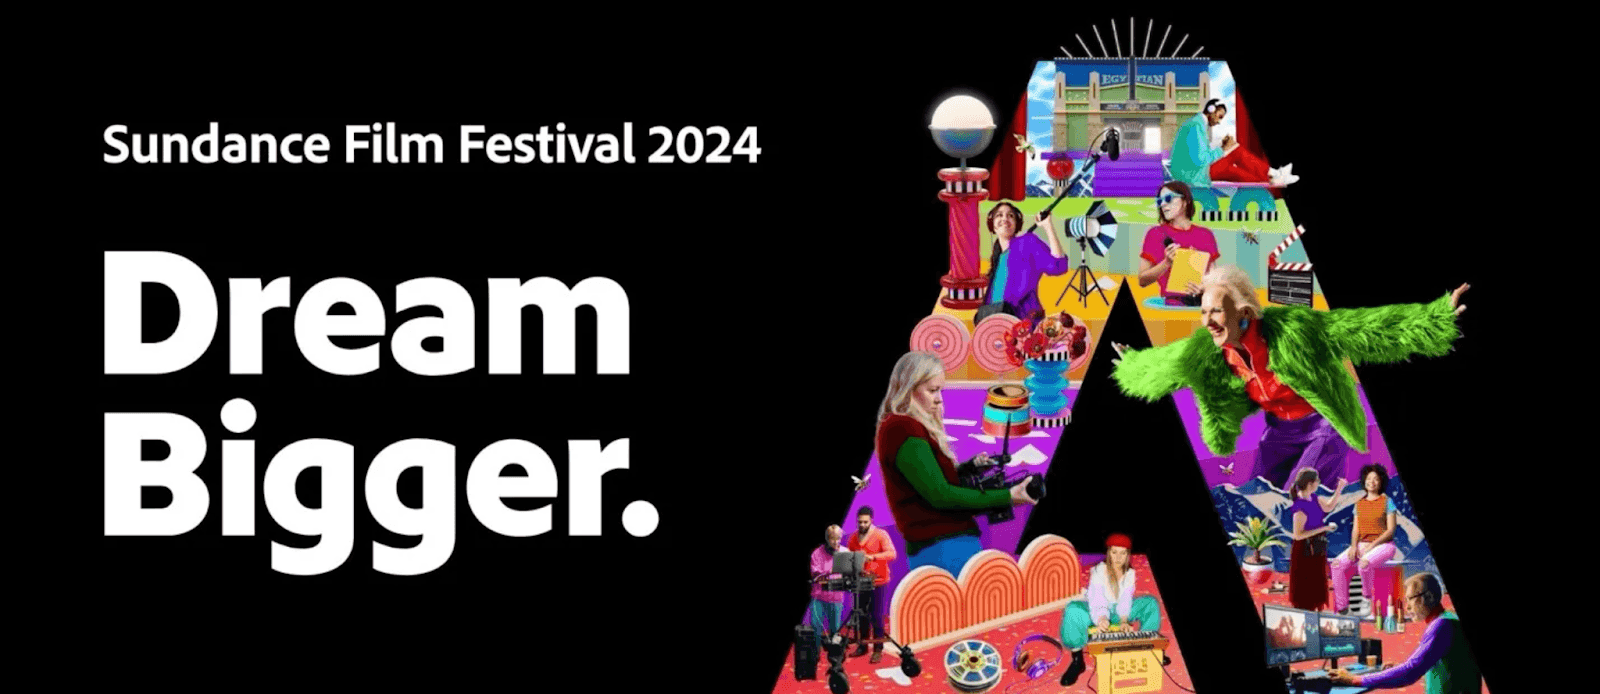 Sundance FIlm Festival 2024 - Dream Bigger.